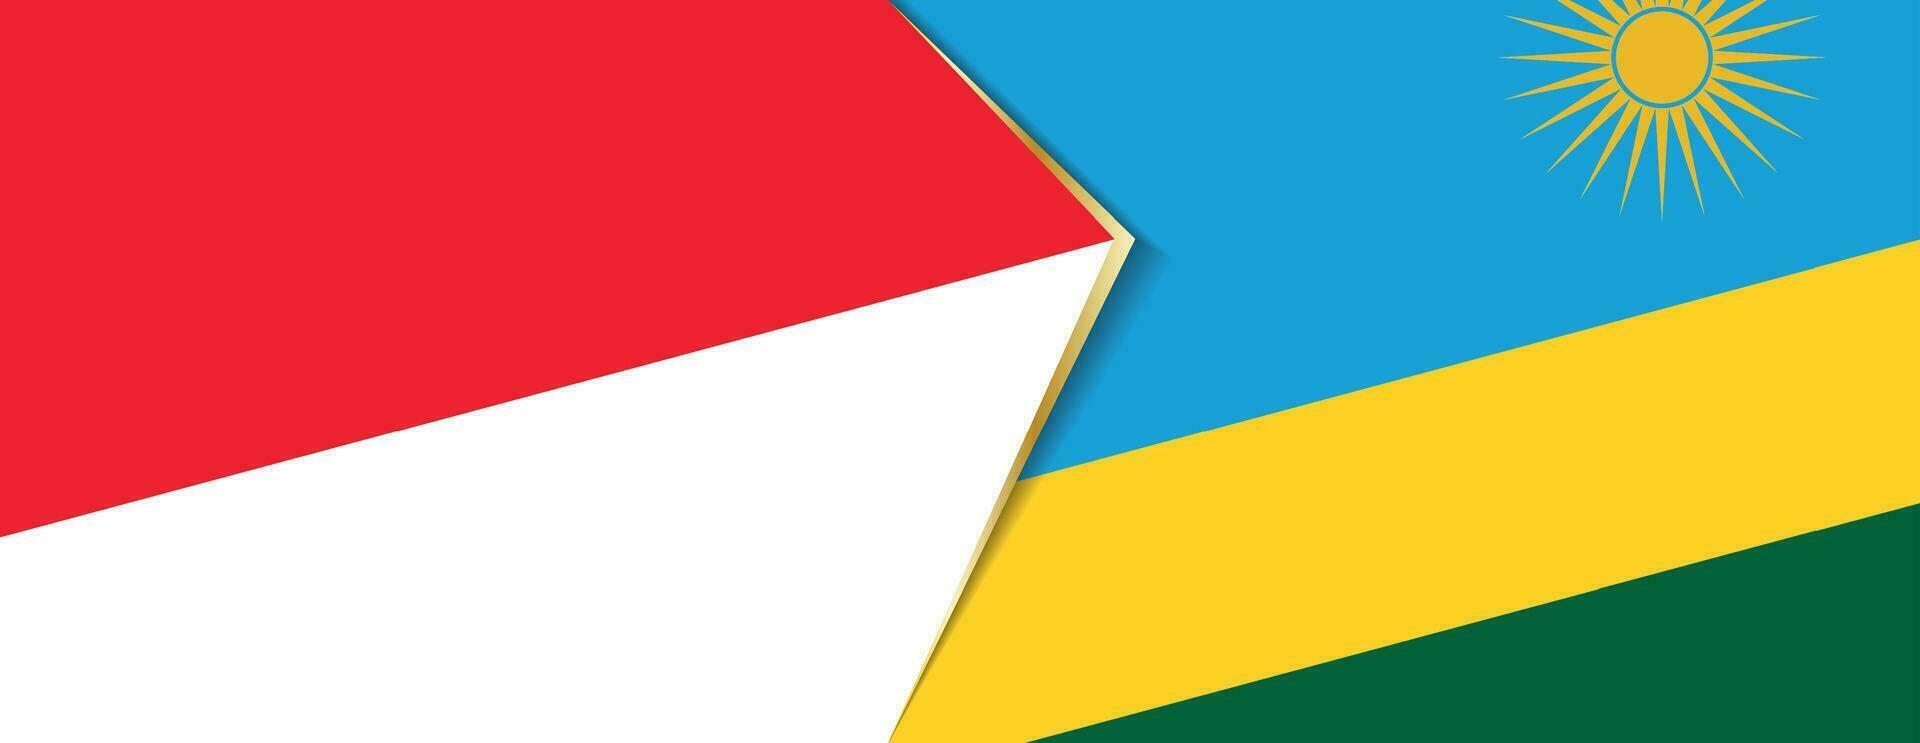 Indonesia y Ruanda banderas, dos vector banderas